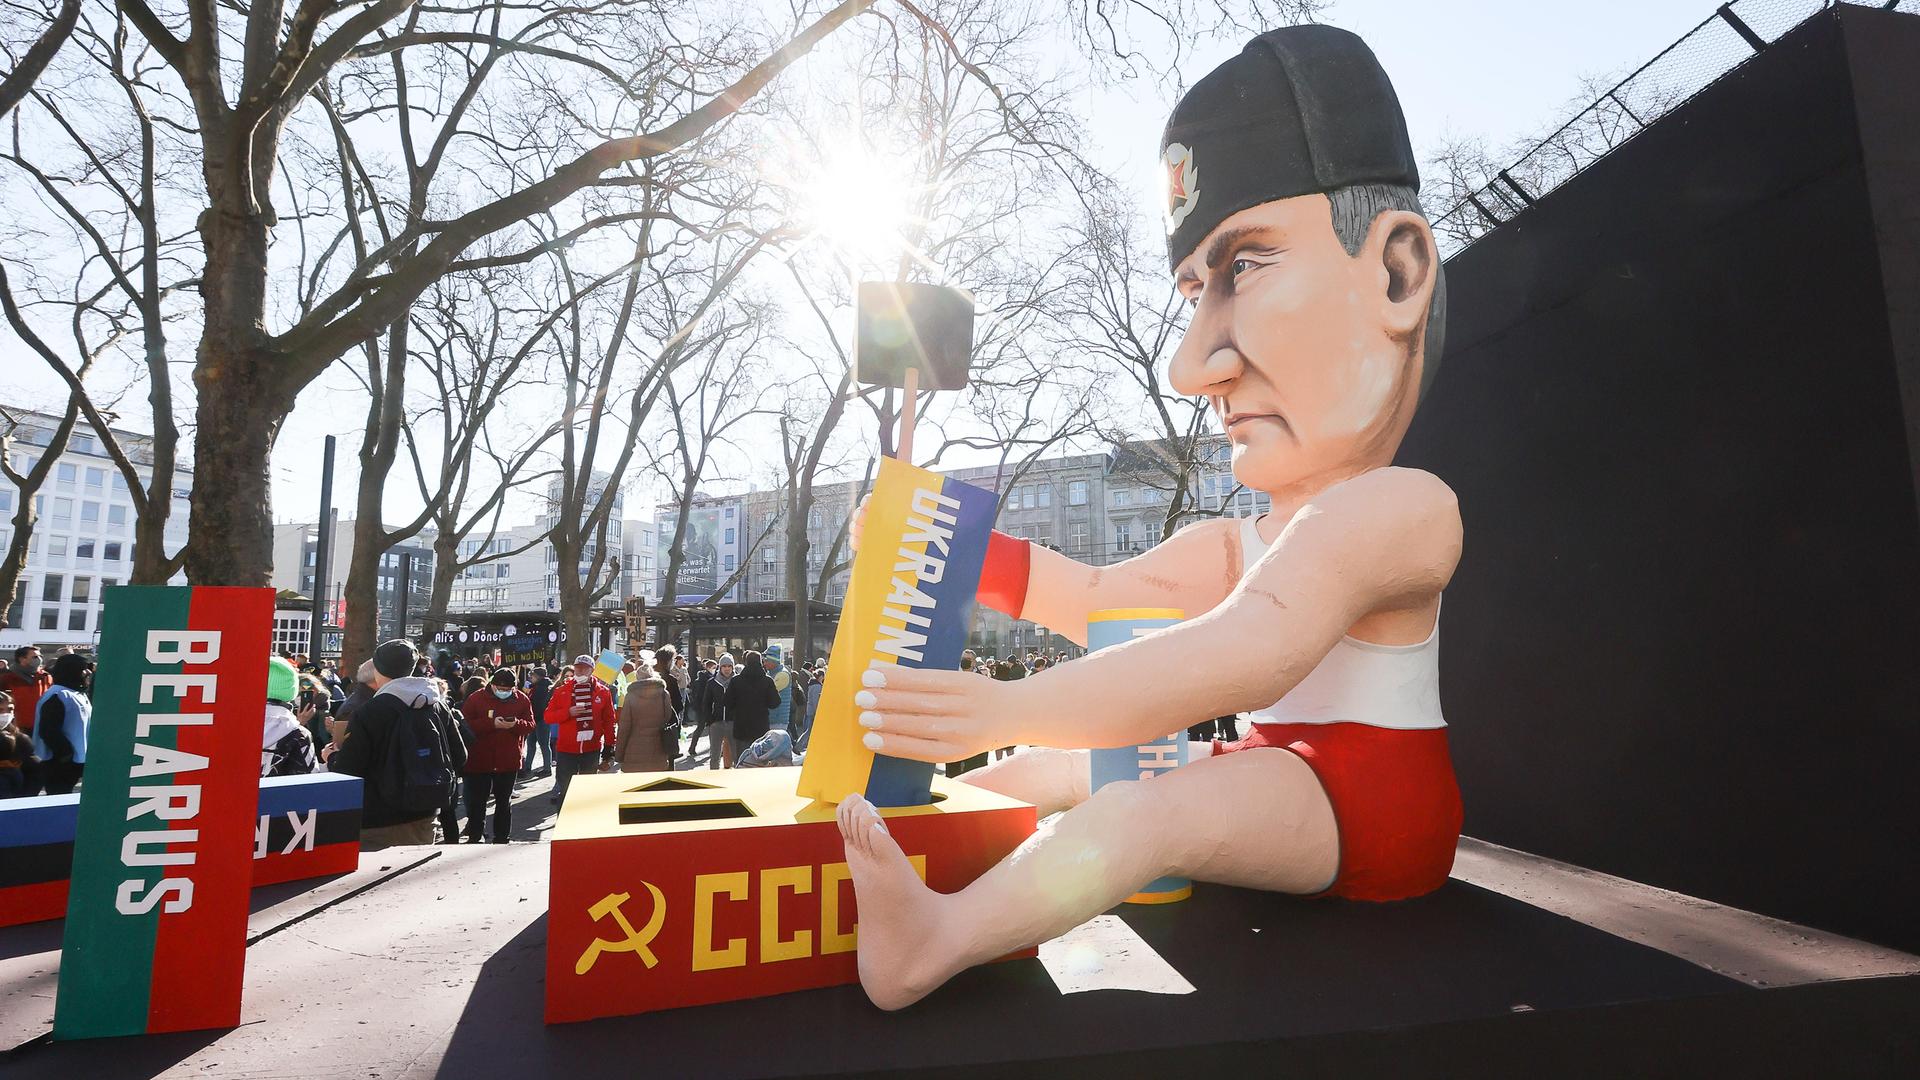 Putin-Motivwagen beim Rosenmontag in Köln